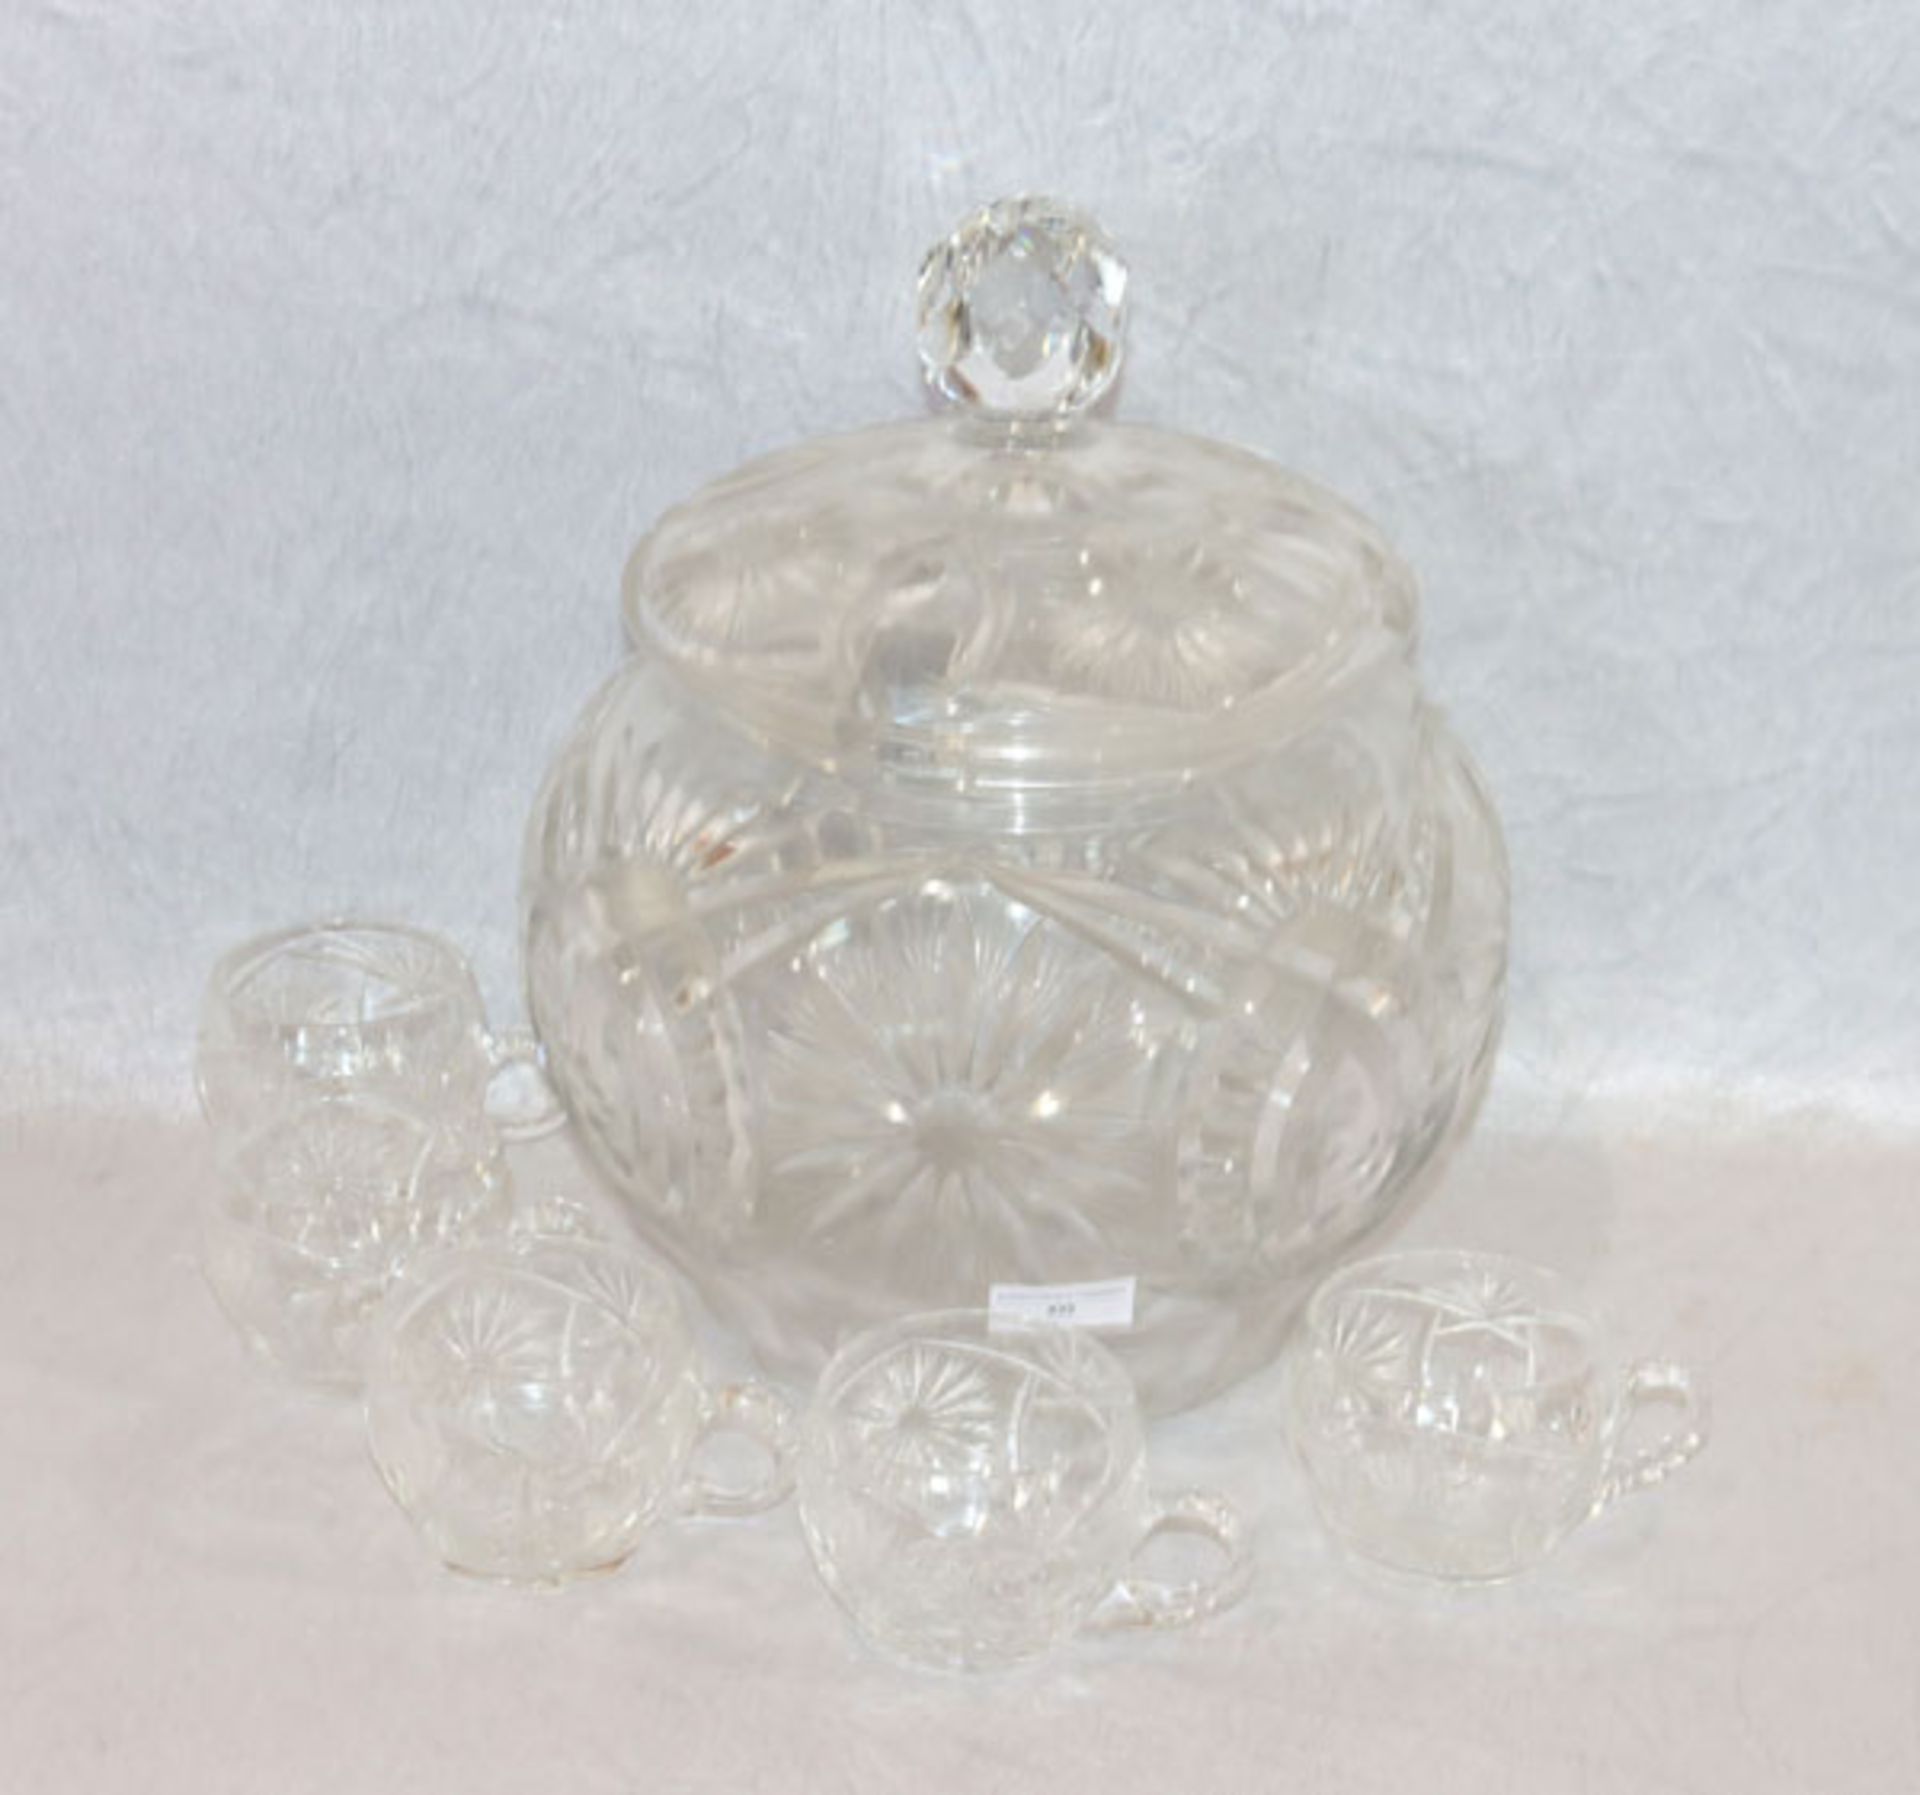 Kristallglas Bowle, H 34 cm, D 30 cm, mit 5 Becher, H 7 cm, D 9cm, alles mit Schliffdekor,